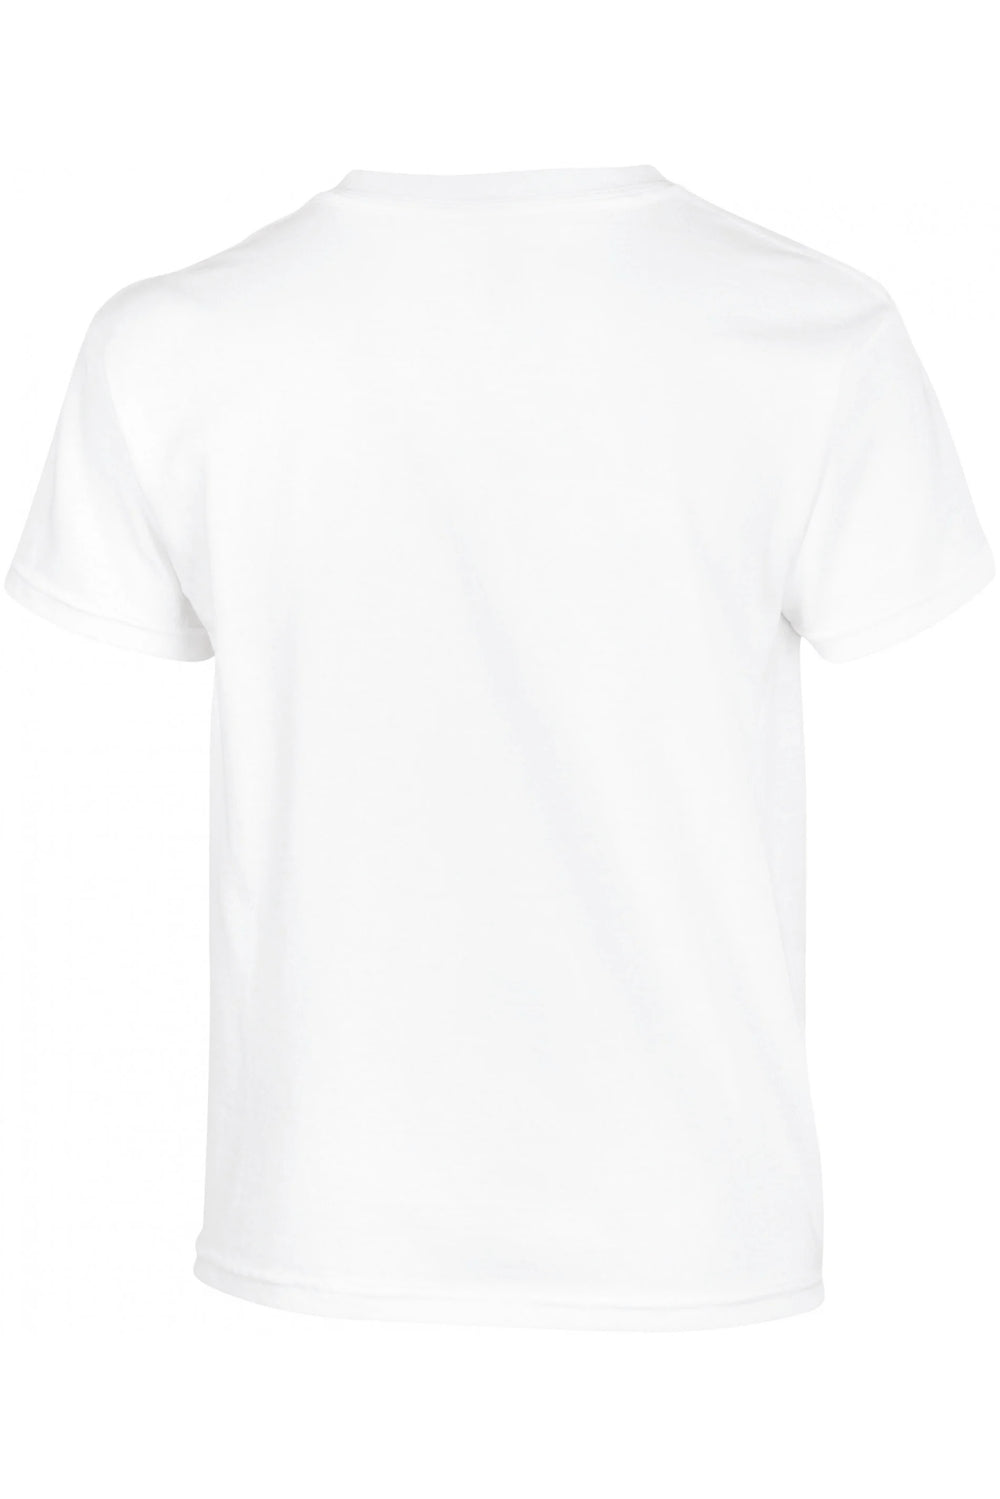 T-Shirt Kid - Ramen <br> Collection Classique